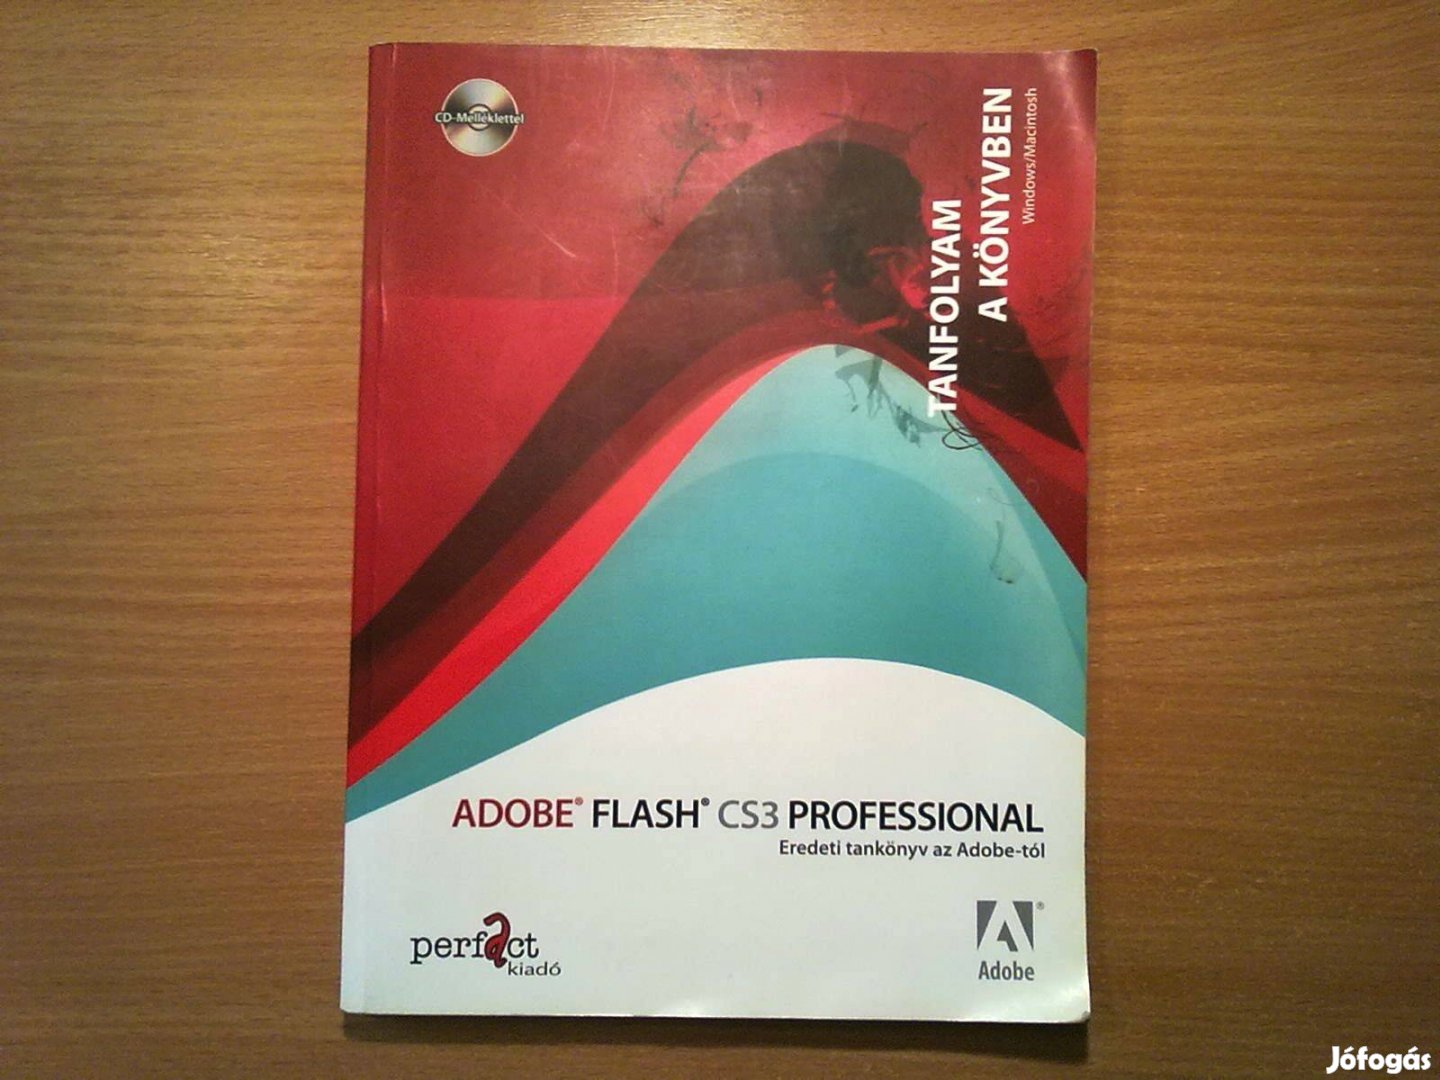 Adobe Flash CS3 Professional (Eredeti tankönyv az Adobe-tól)